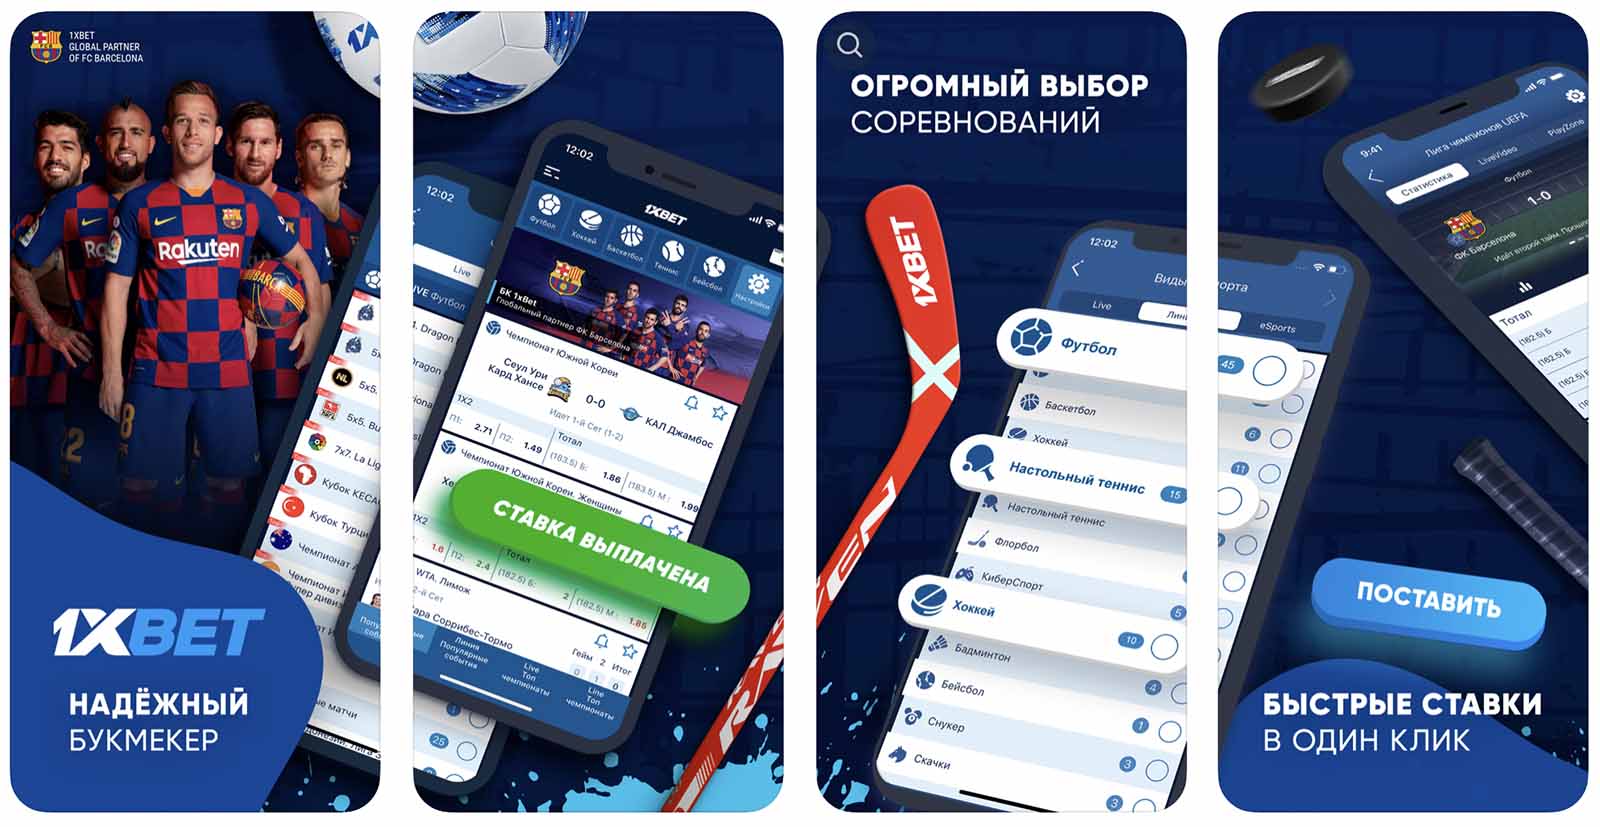 1xbet Skachat na Android | 1xbet apk uzbekcha yuklab olish va registratsiya